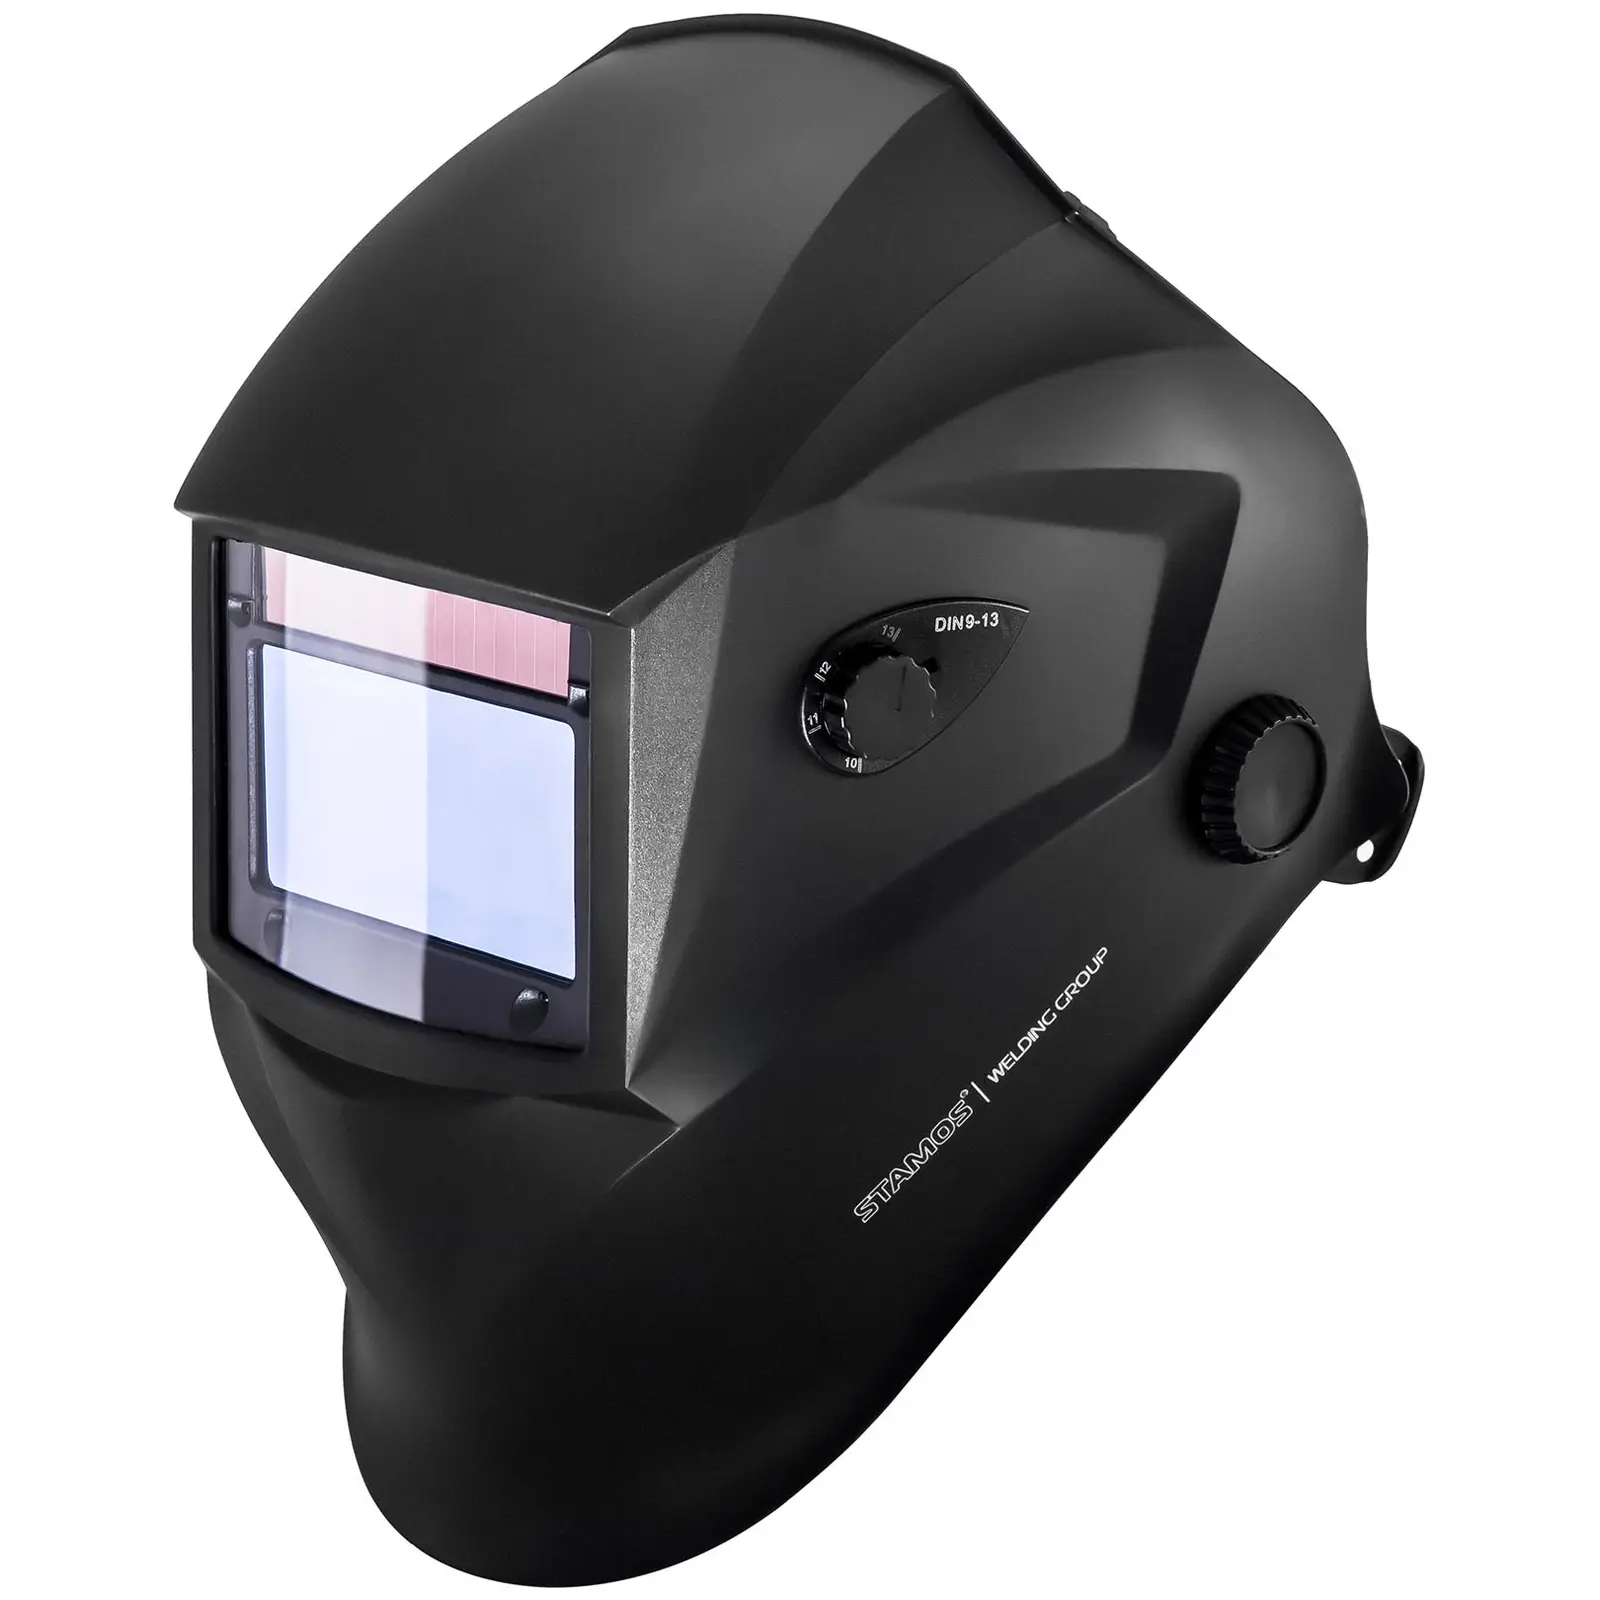 Svařovací set  Elektrodová svářečka - 250 A - Hot Start - IGBT + Svářecí helma - Blaster - ADVANCED SERIES